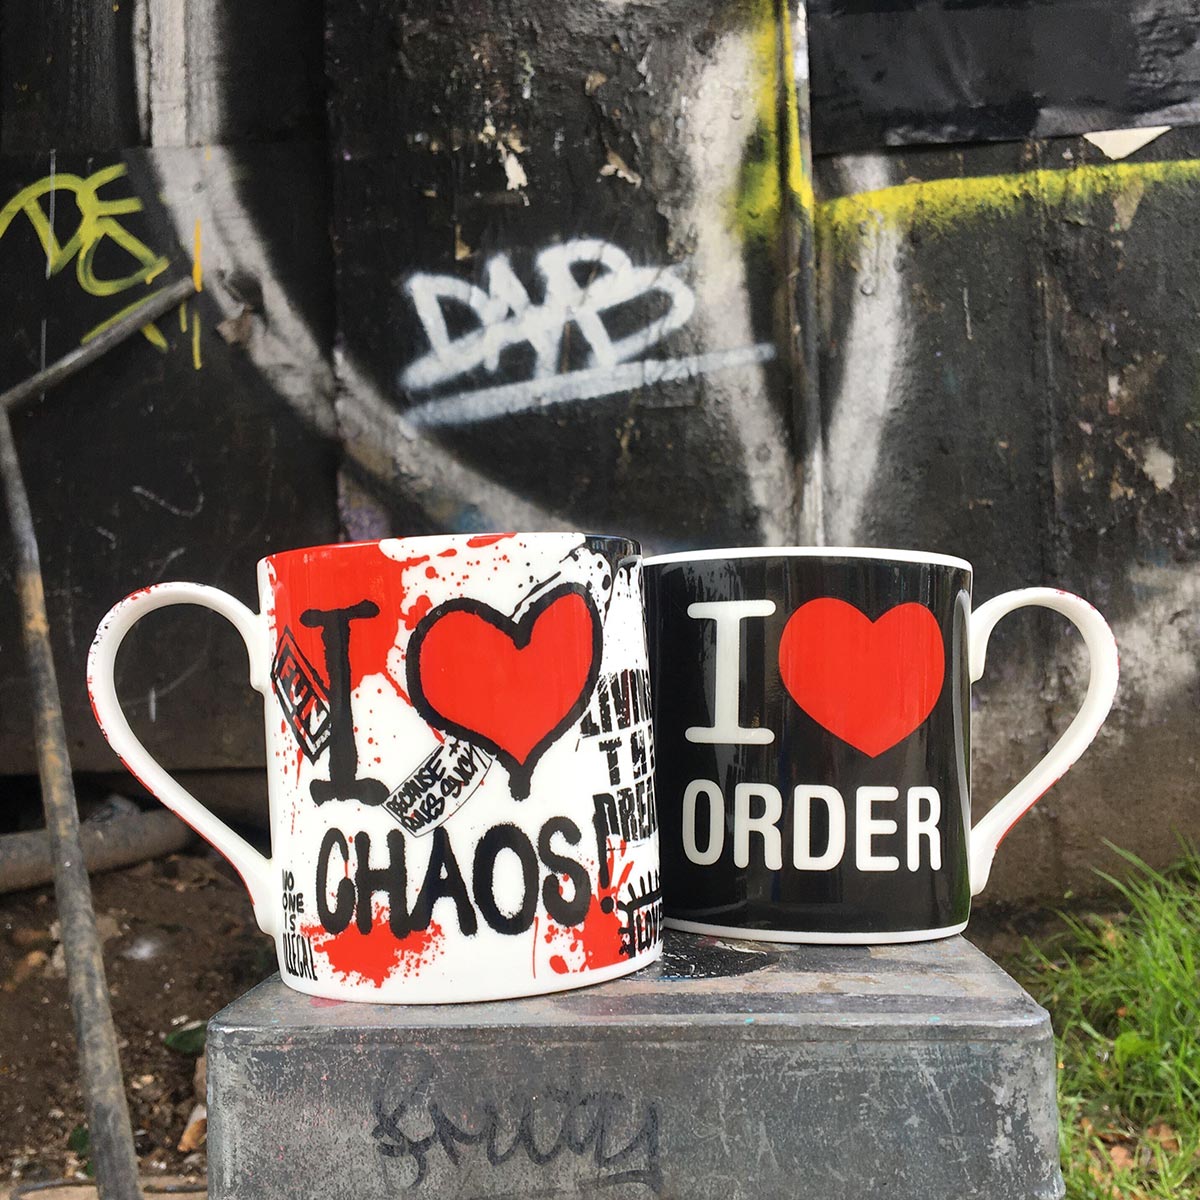 Order From Chaos Mug